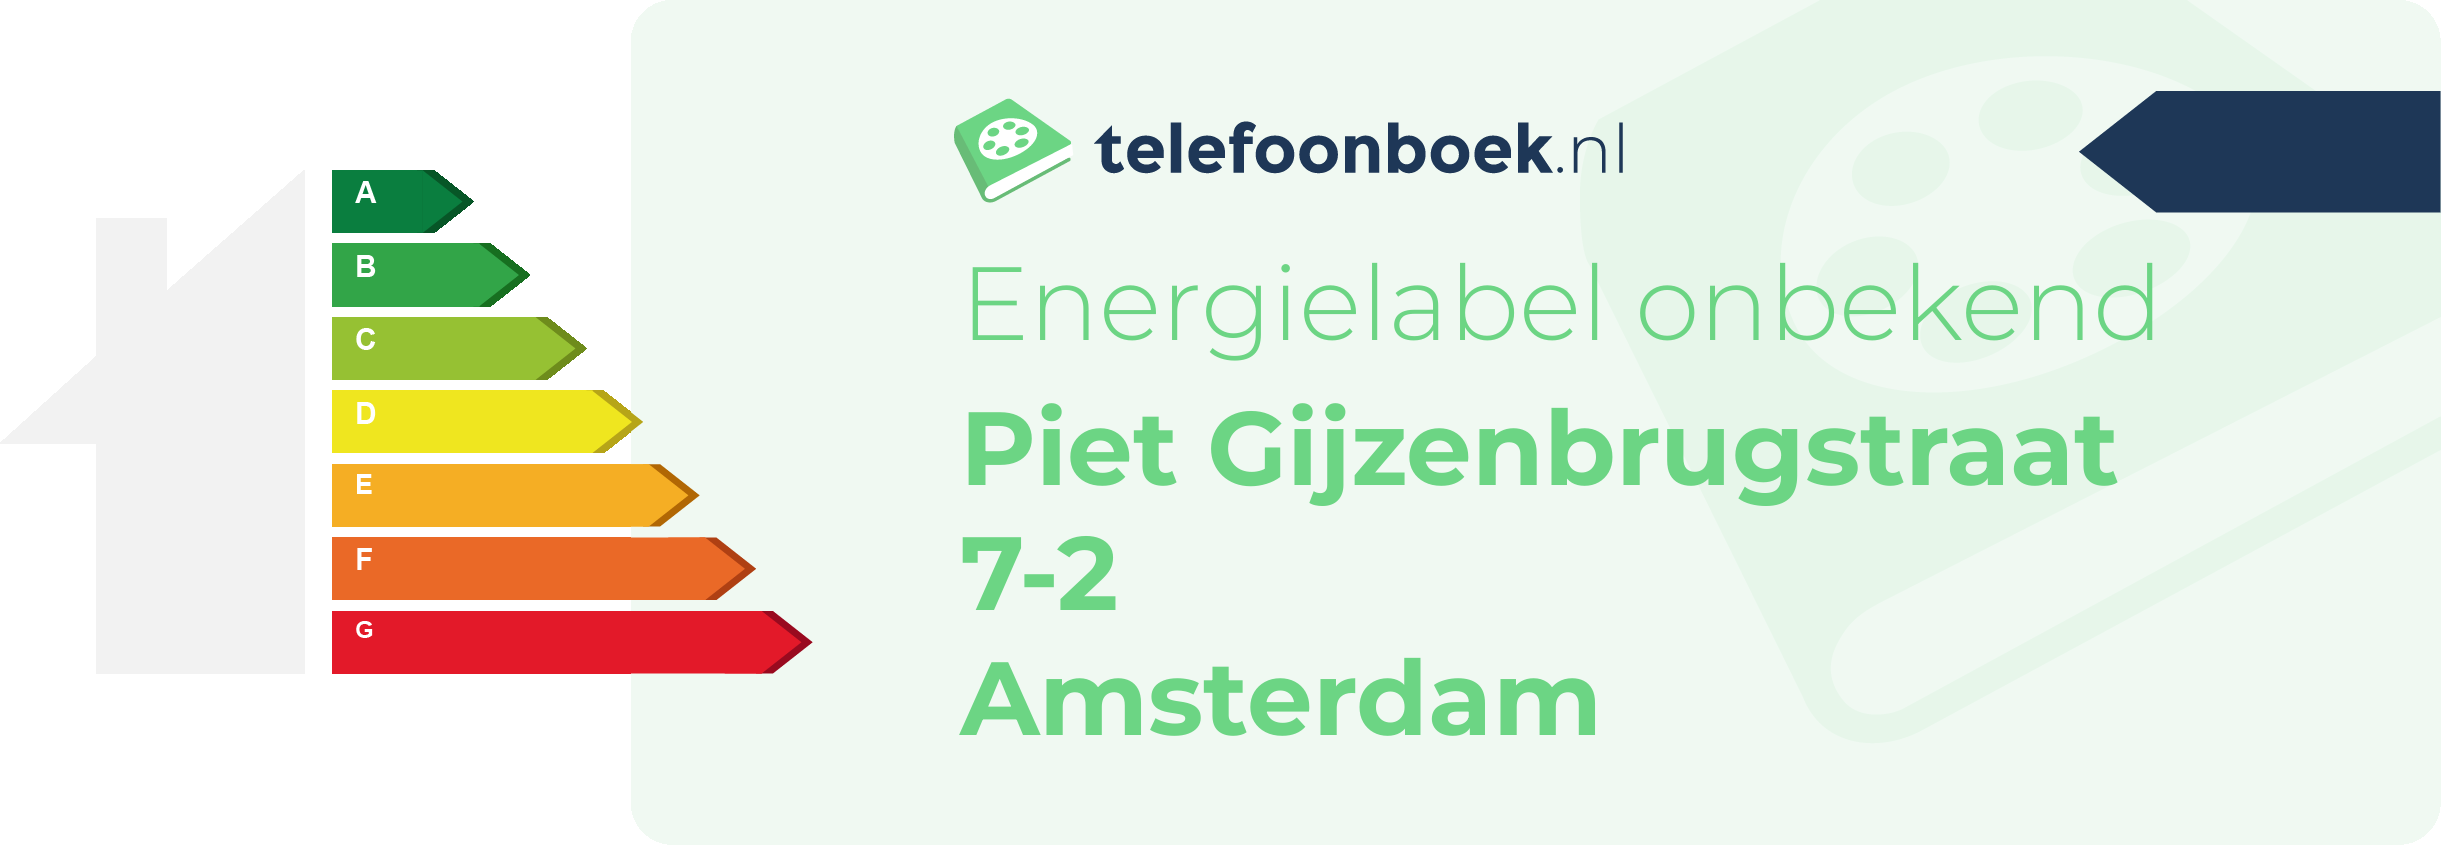 Energielabel Piet Gijzenbrugstraat 7-2 Amsterdam